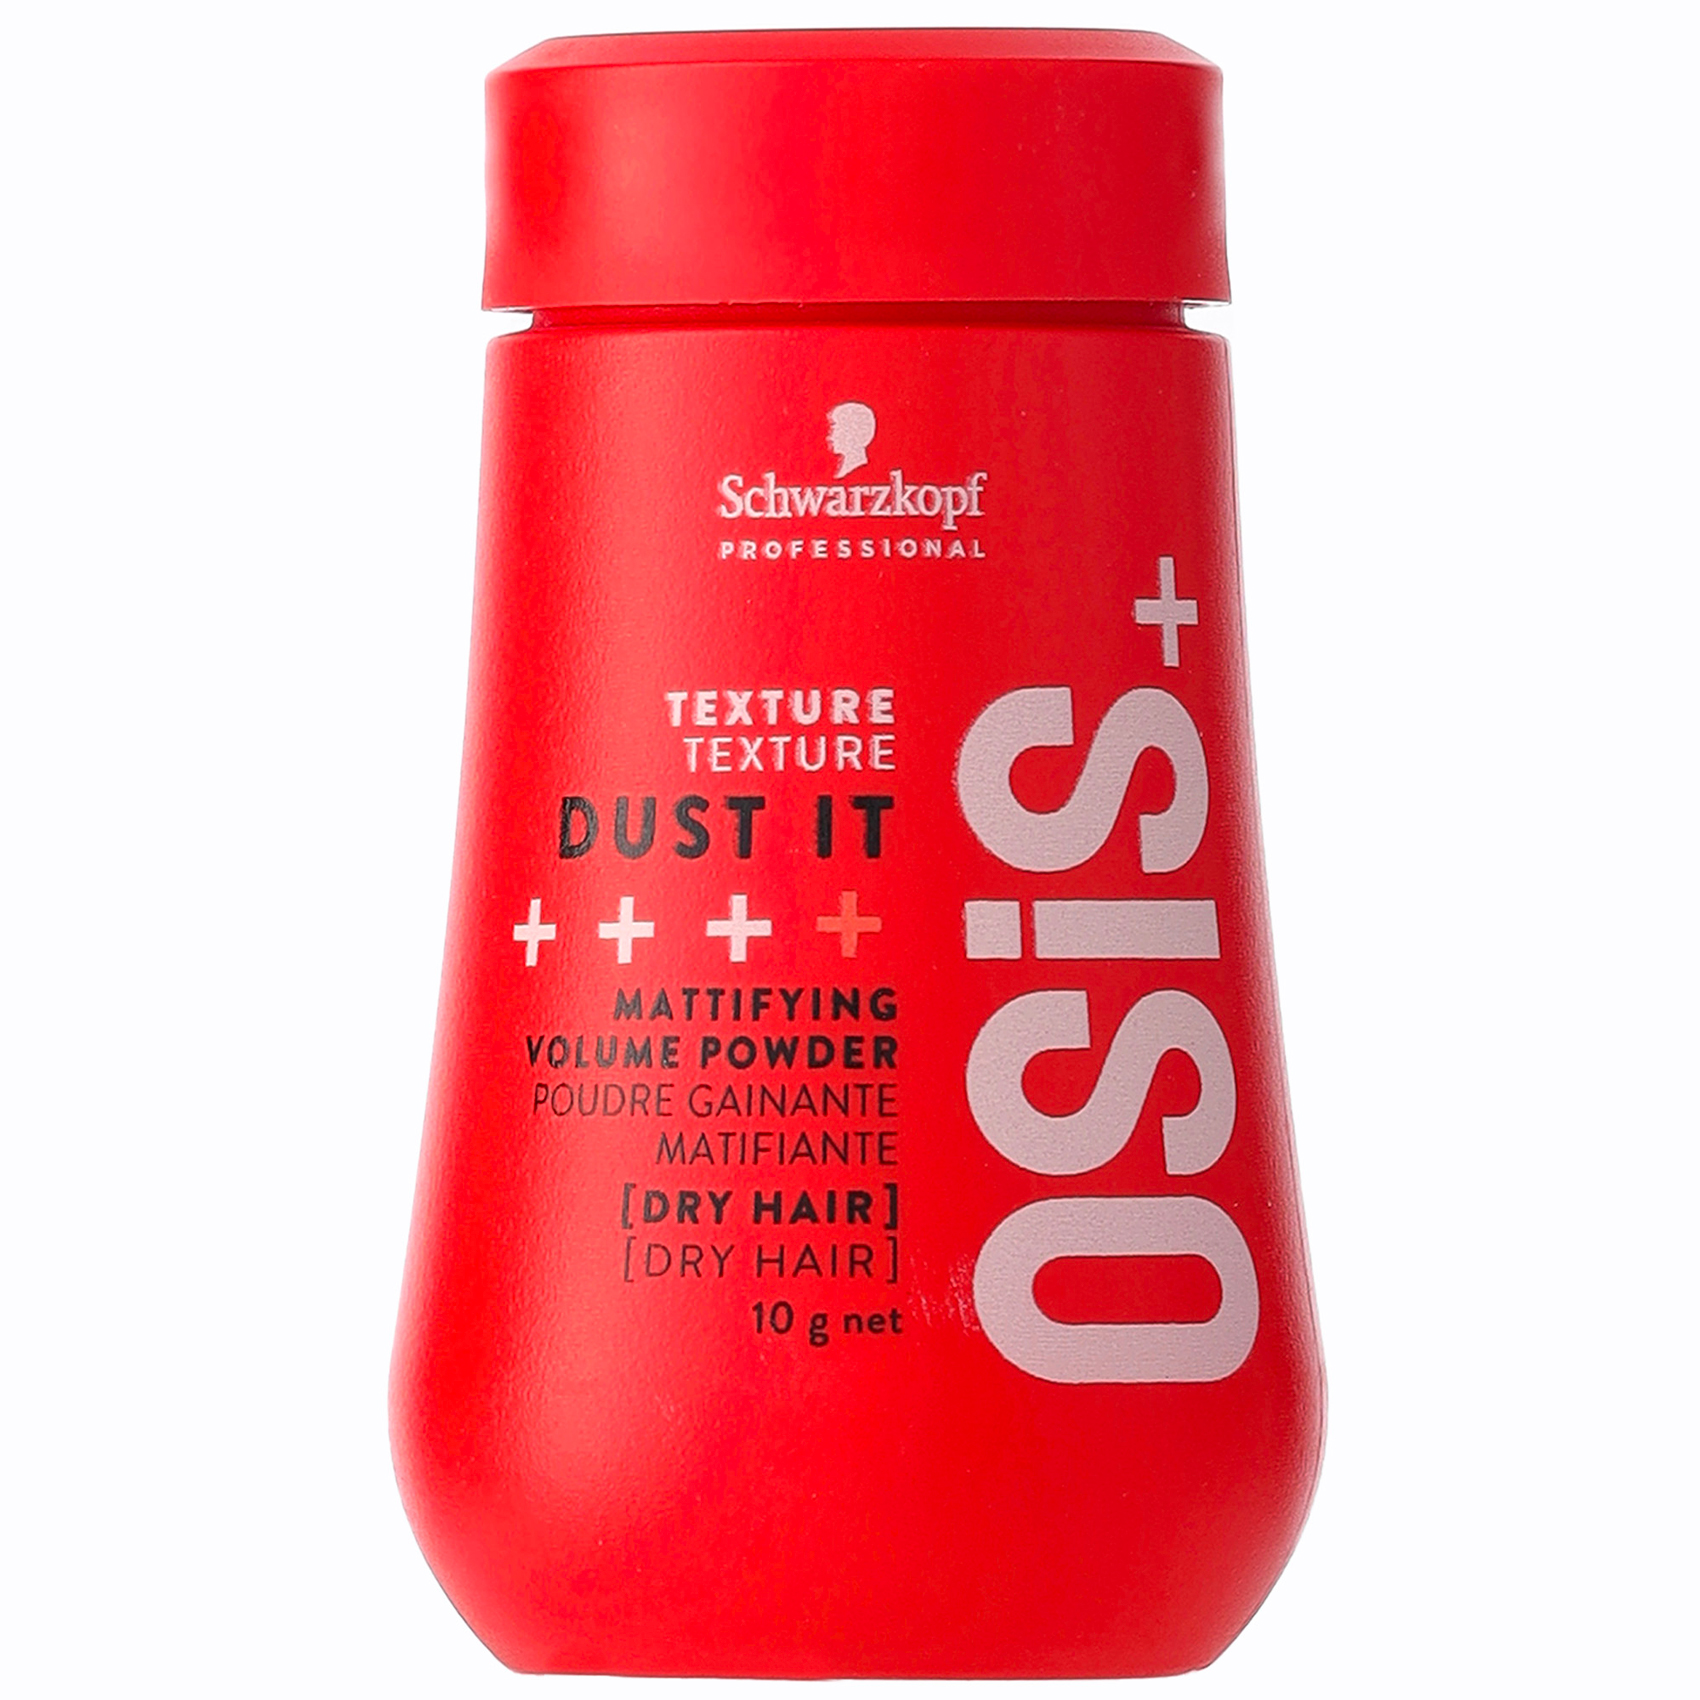 Osis + Dust It Schwarzkopf 10G